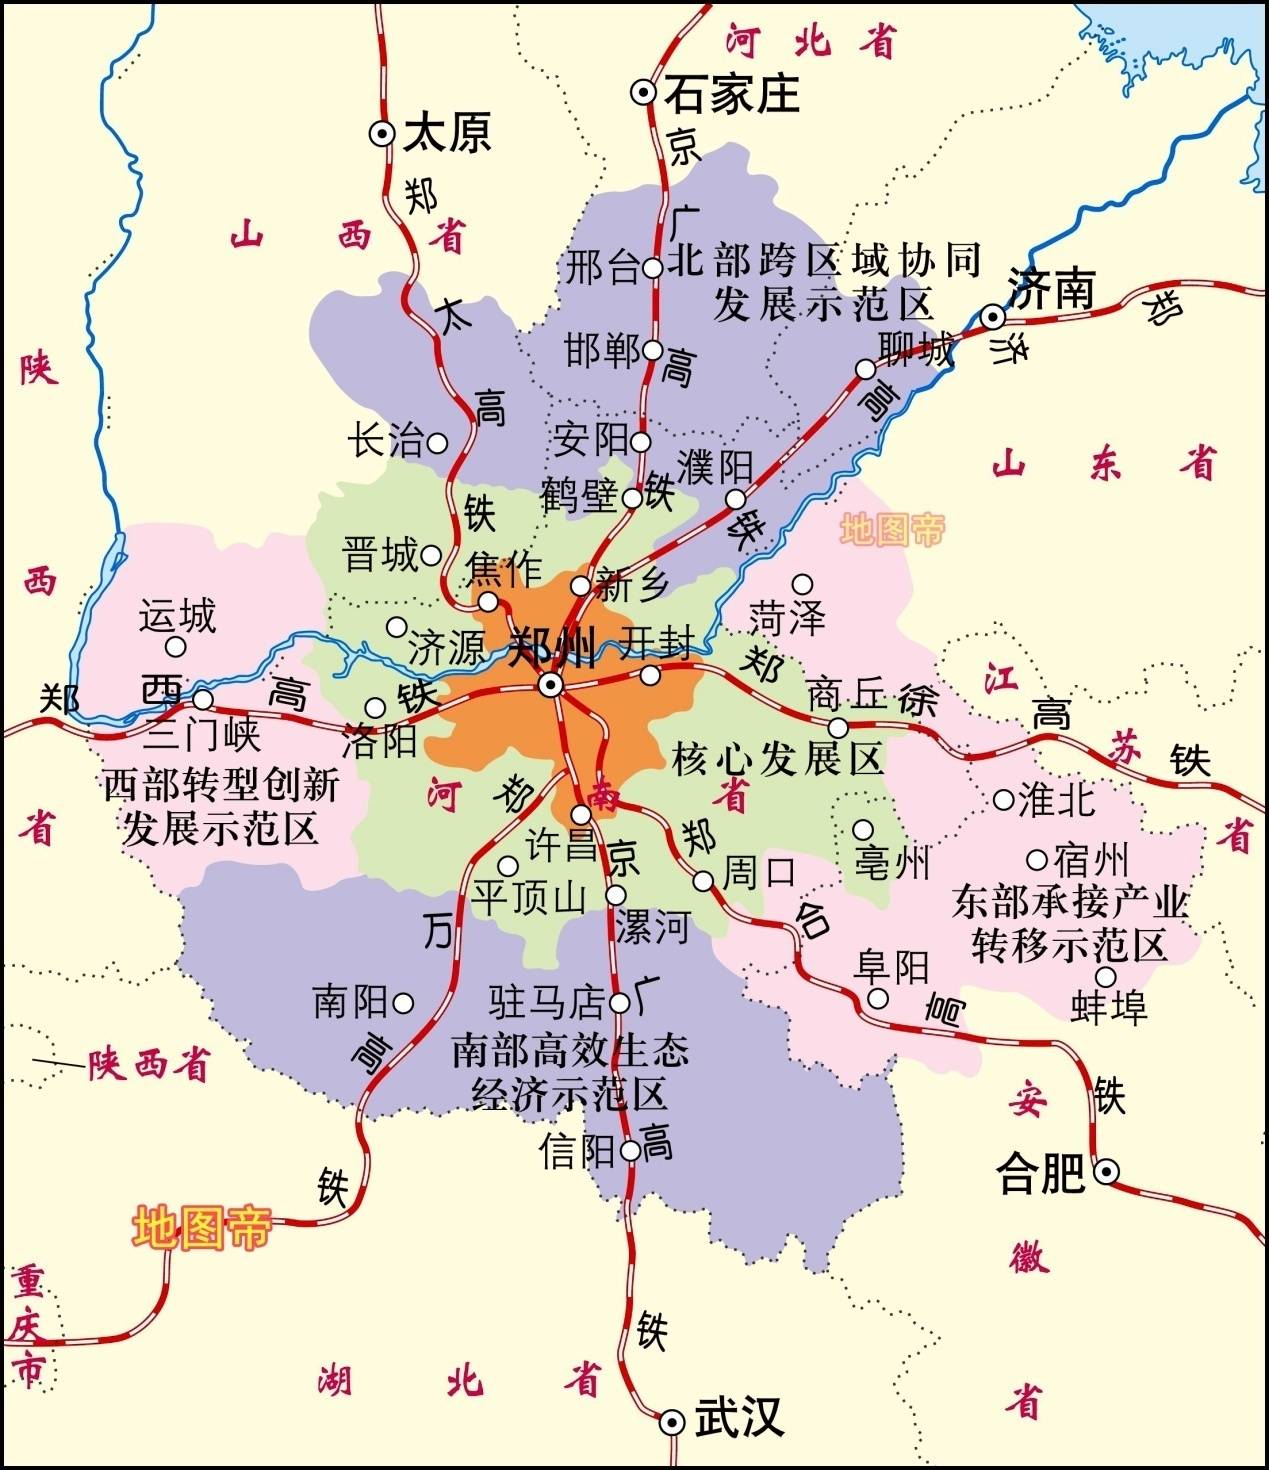 河南地图各市位置图片